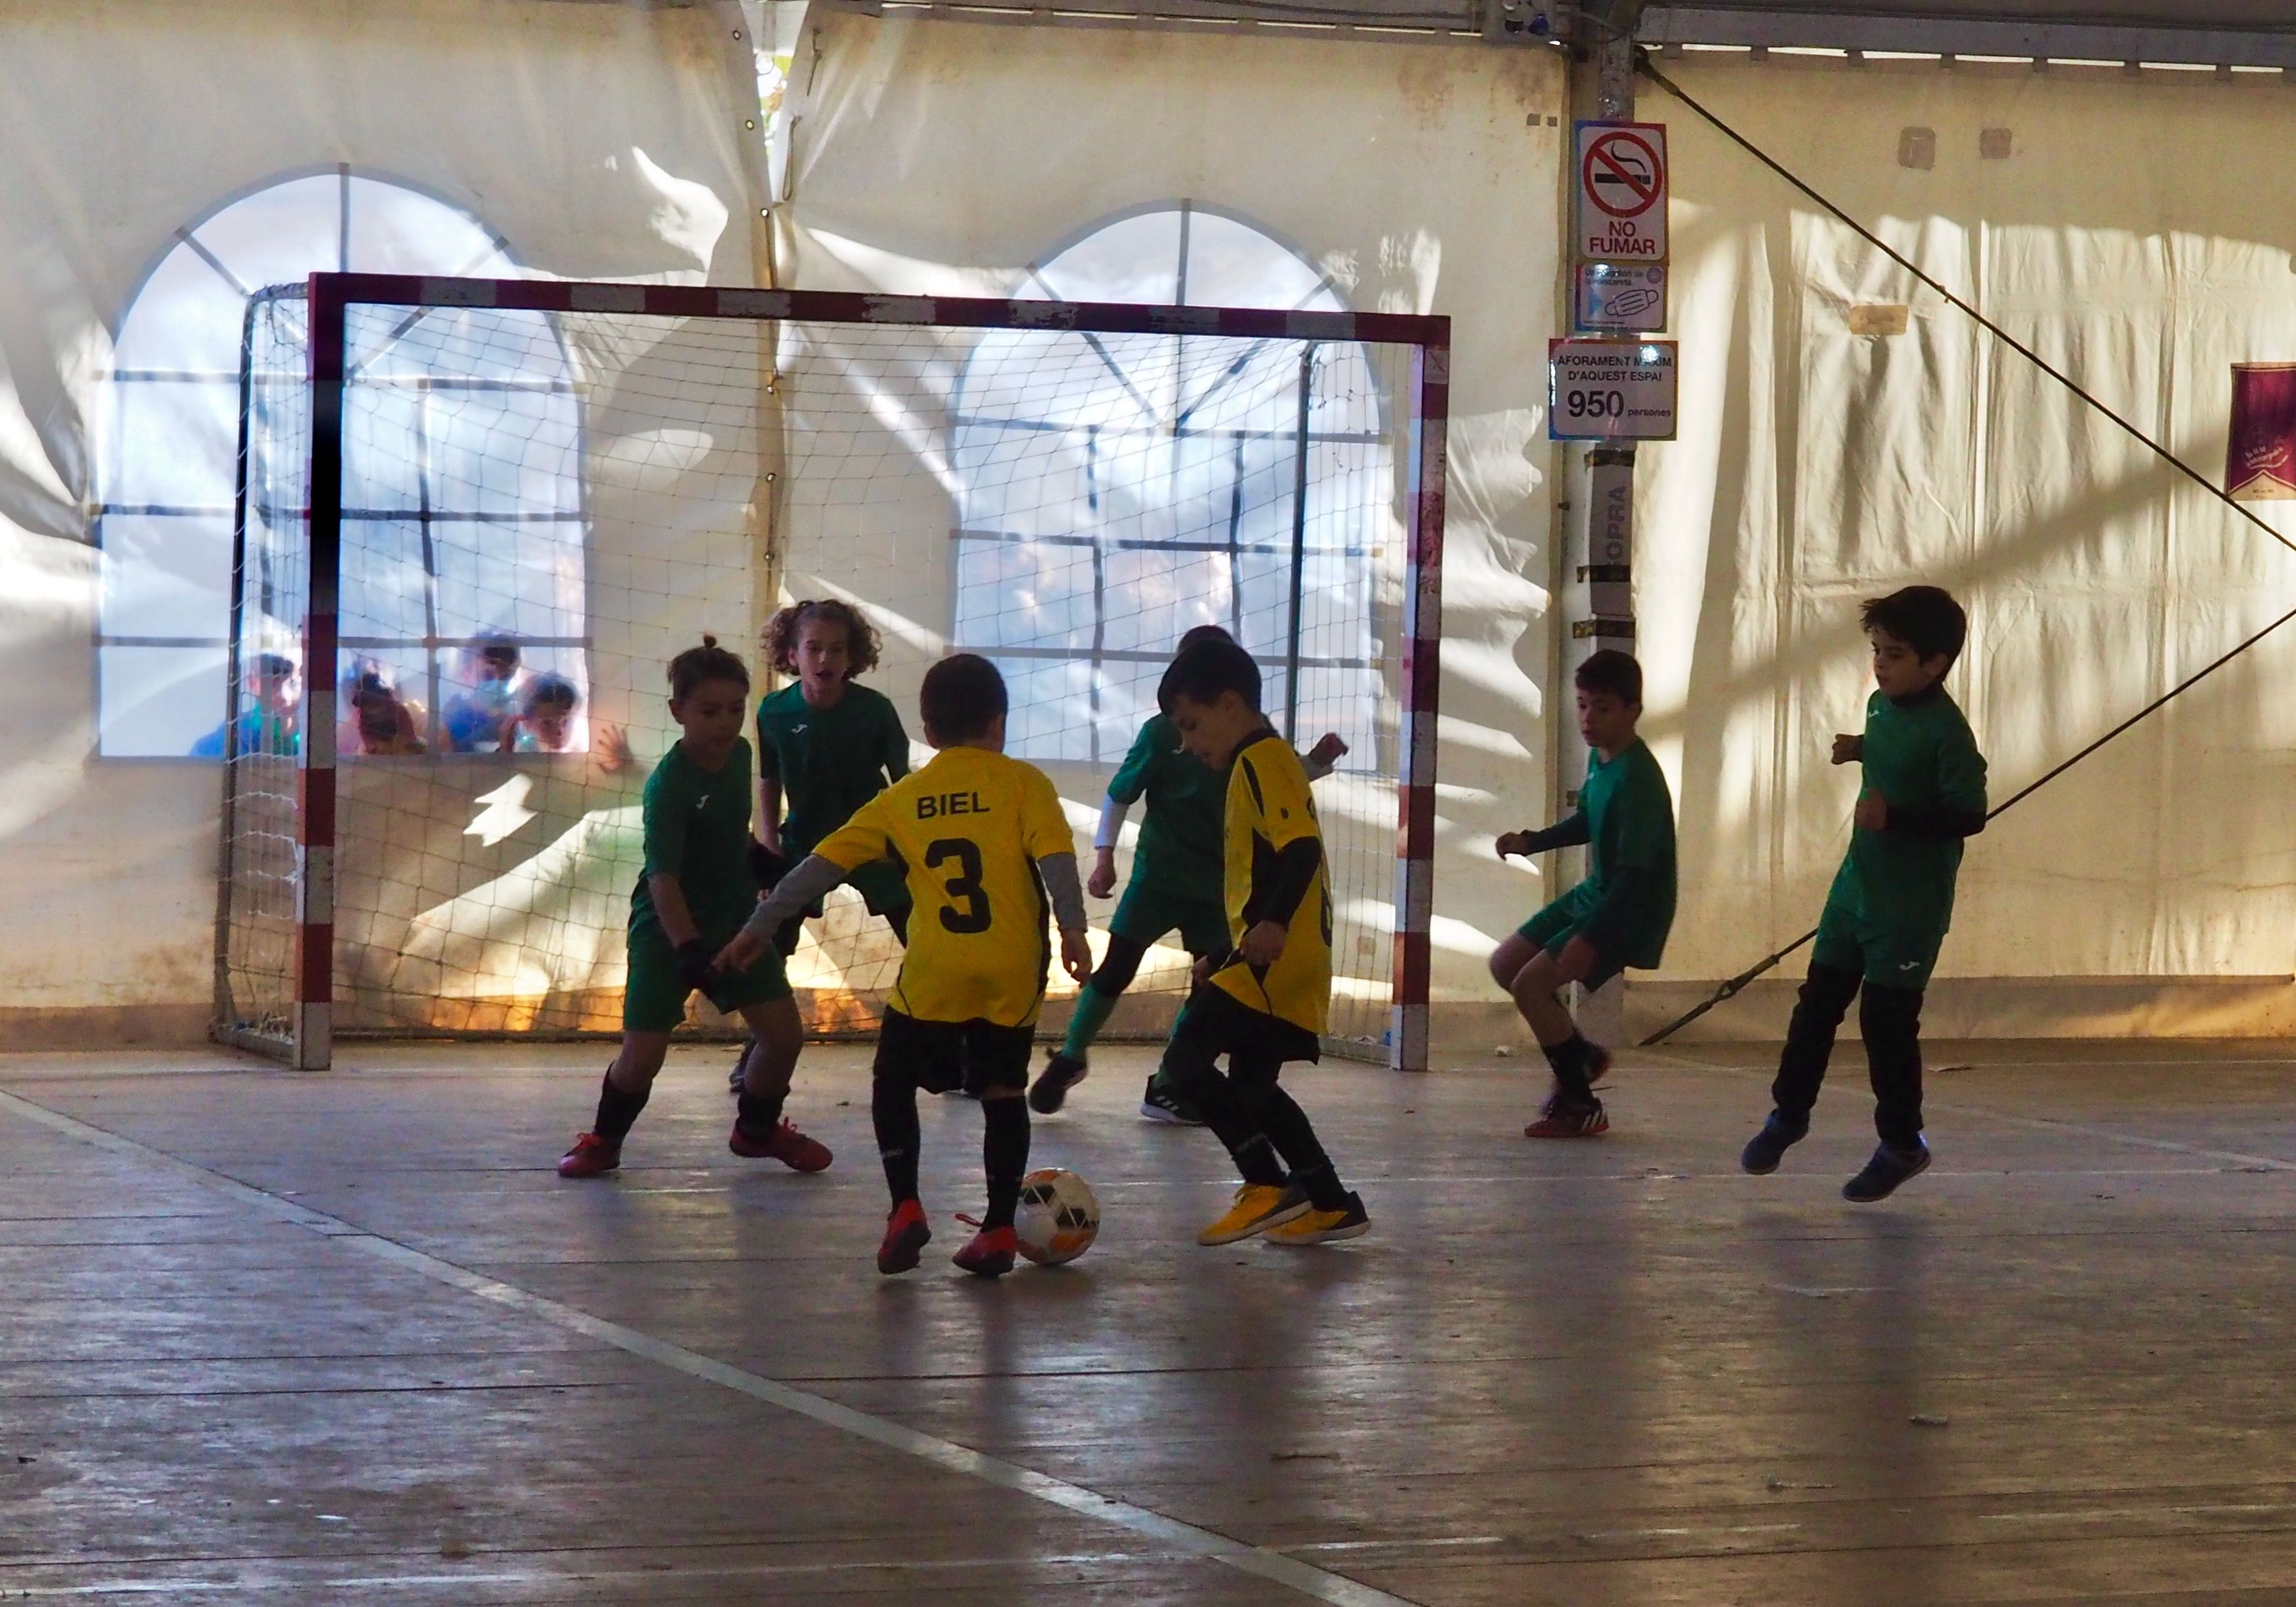 Torneig infantil de futbol sala a l'envelat, dissabte al matí. FOTO: Mónica García Moreno